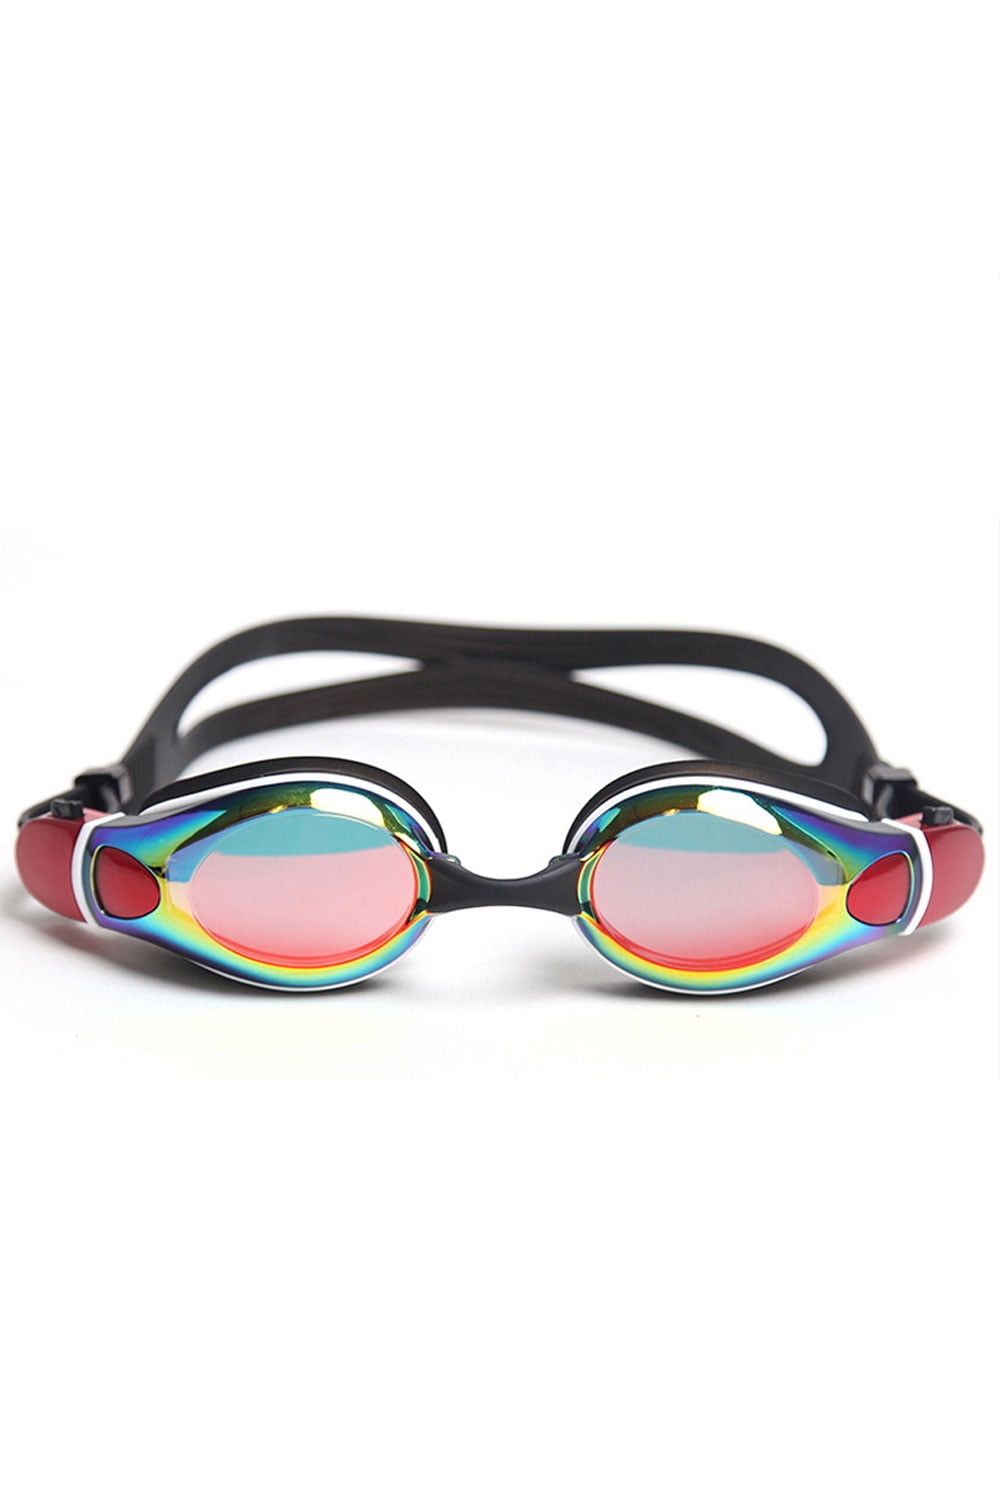 Waterproof Swim Goggles Anti-fog Glasses Swiming Cap Hat Water Sports Surp 